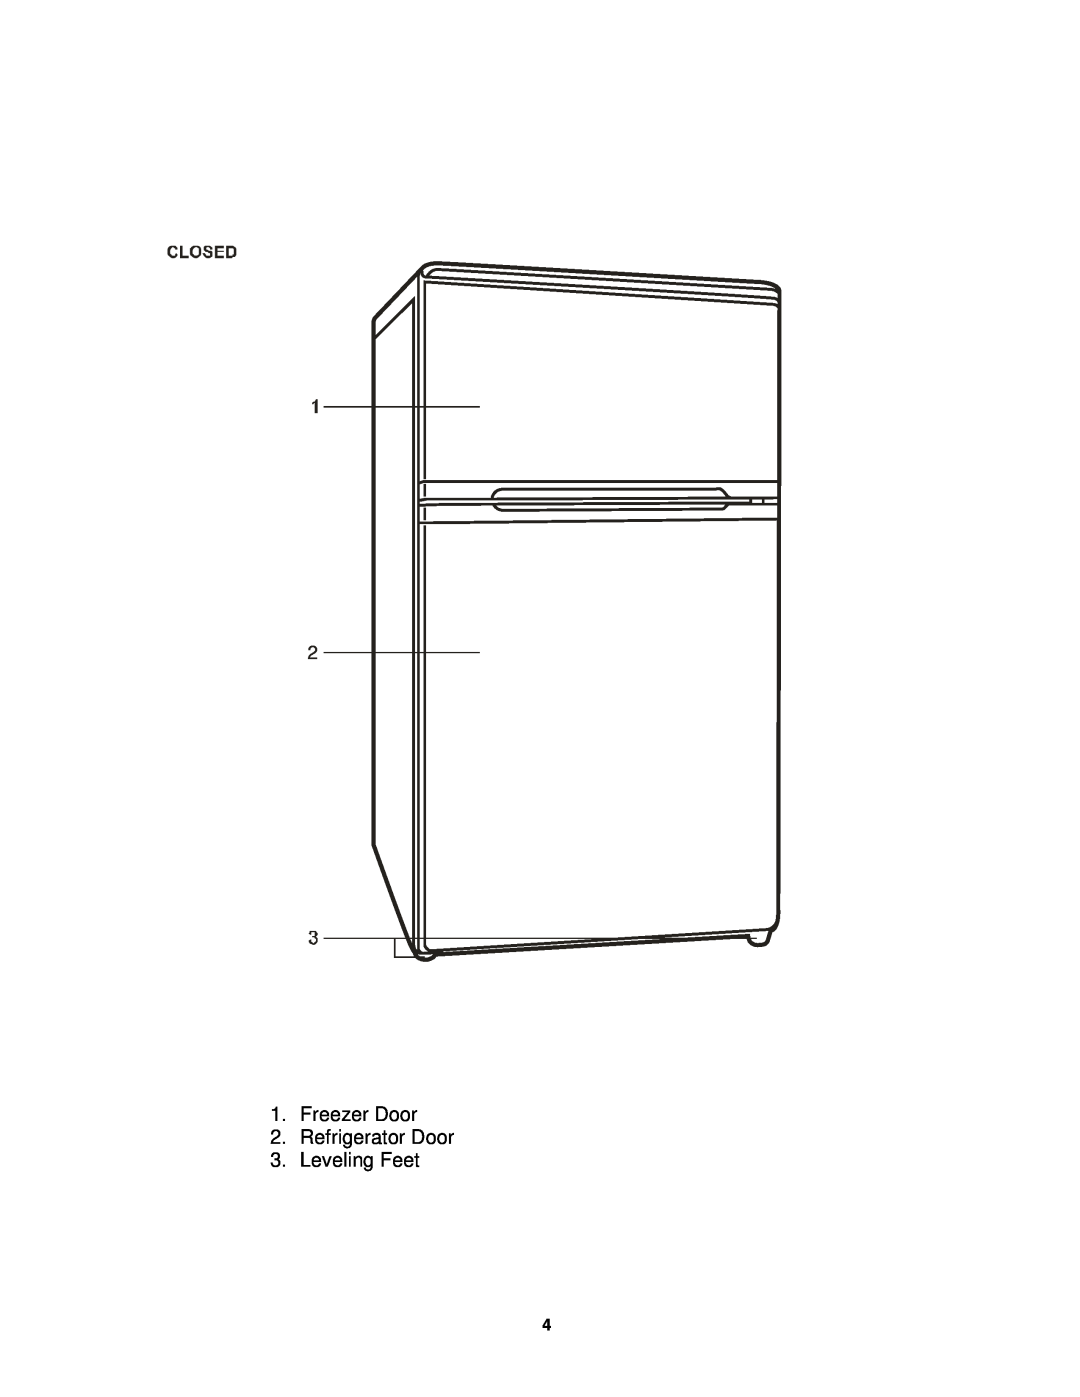 Sunpentown Intl RF-322W user manual Freezer Door 2.Refrigerator Door, Leveling Feet 